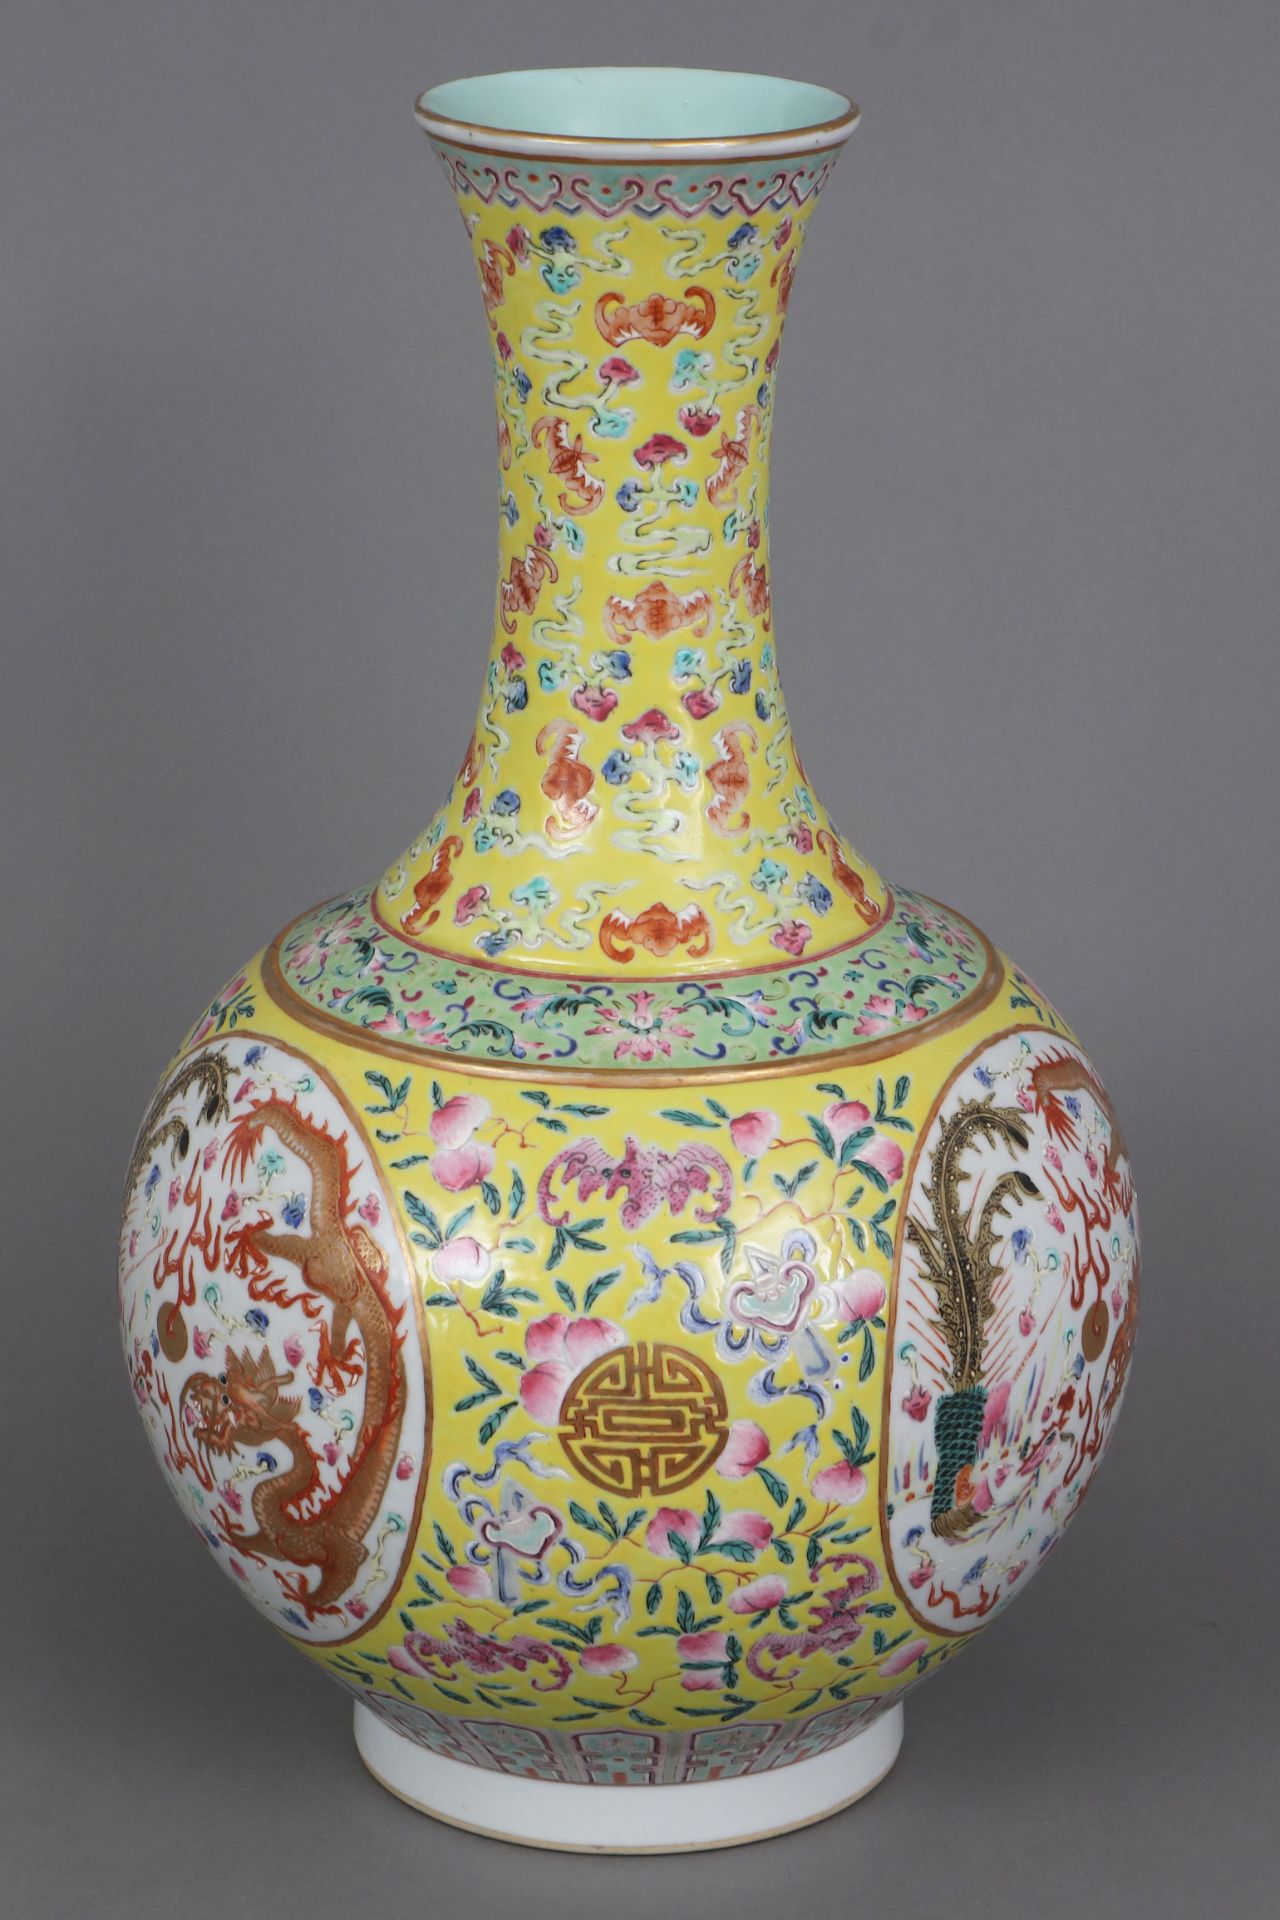 Chinesische Porzellanvase mit Drachendekor auf gelbem Grund - Image 2 of 7